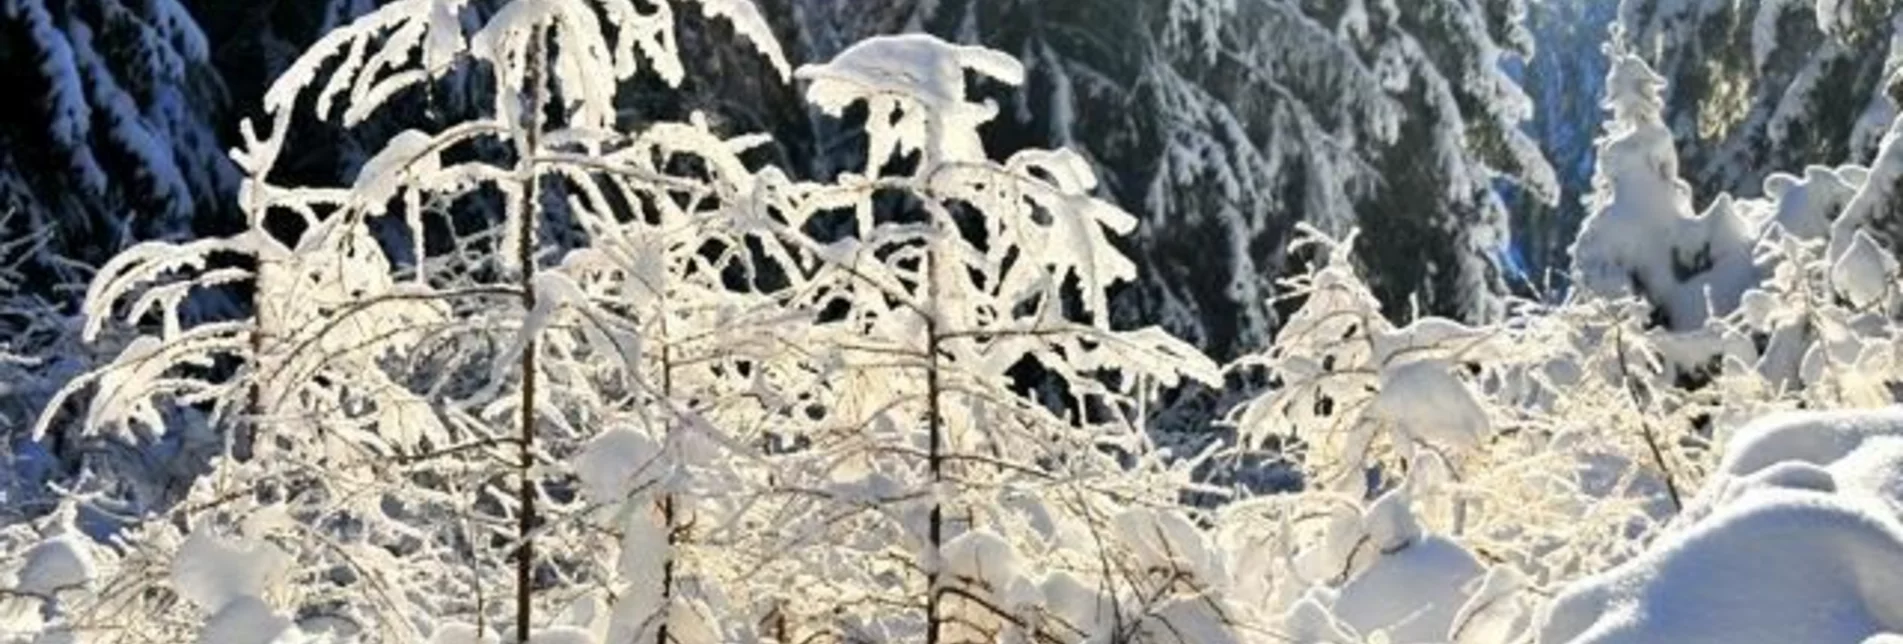 Snowshoe walking Through the winter forests of Fischbach - Touren-Impression #1 | © Unbekannt